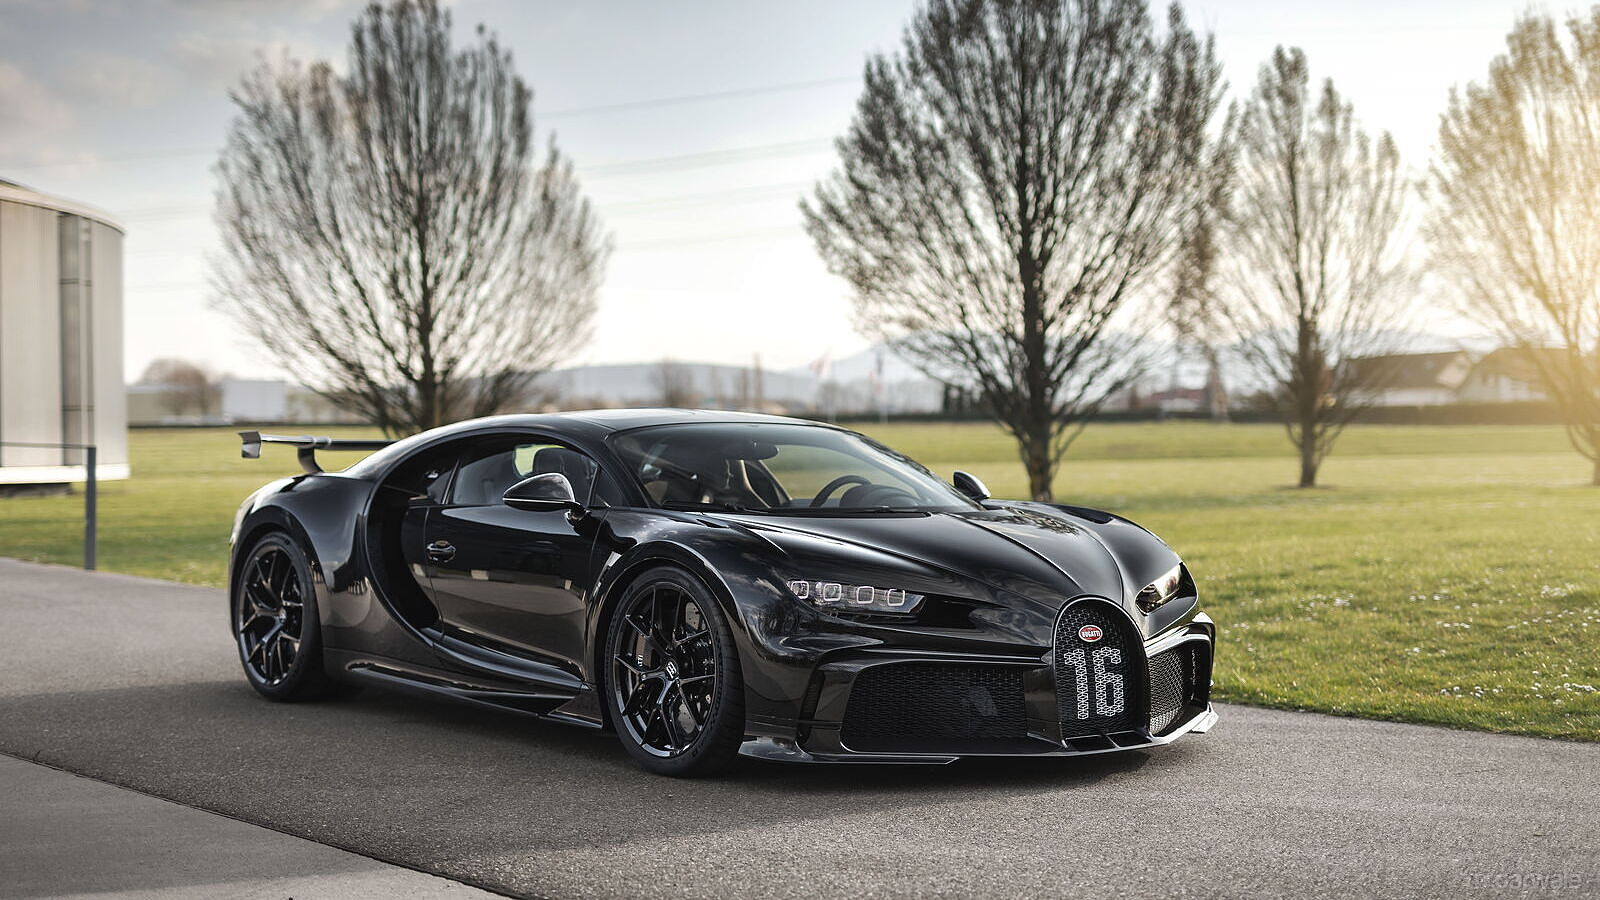 Bugatti Chiron achieves 300 units production milestone - CarWale